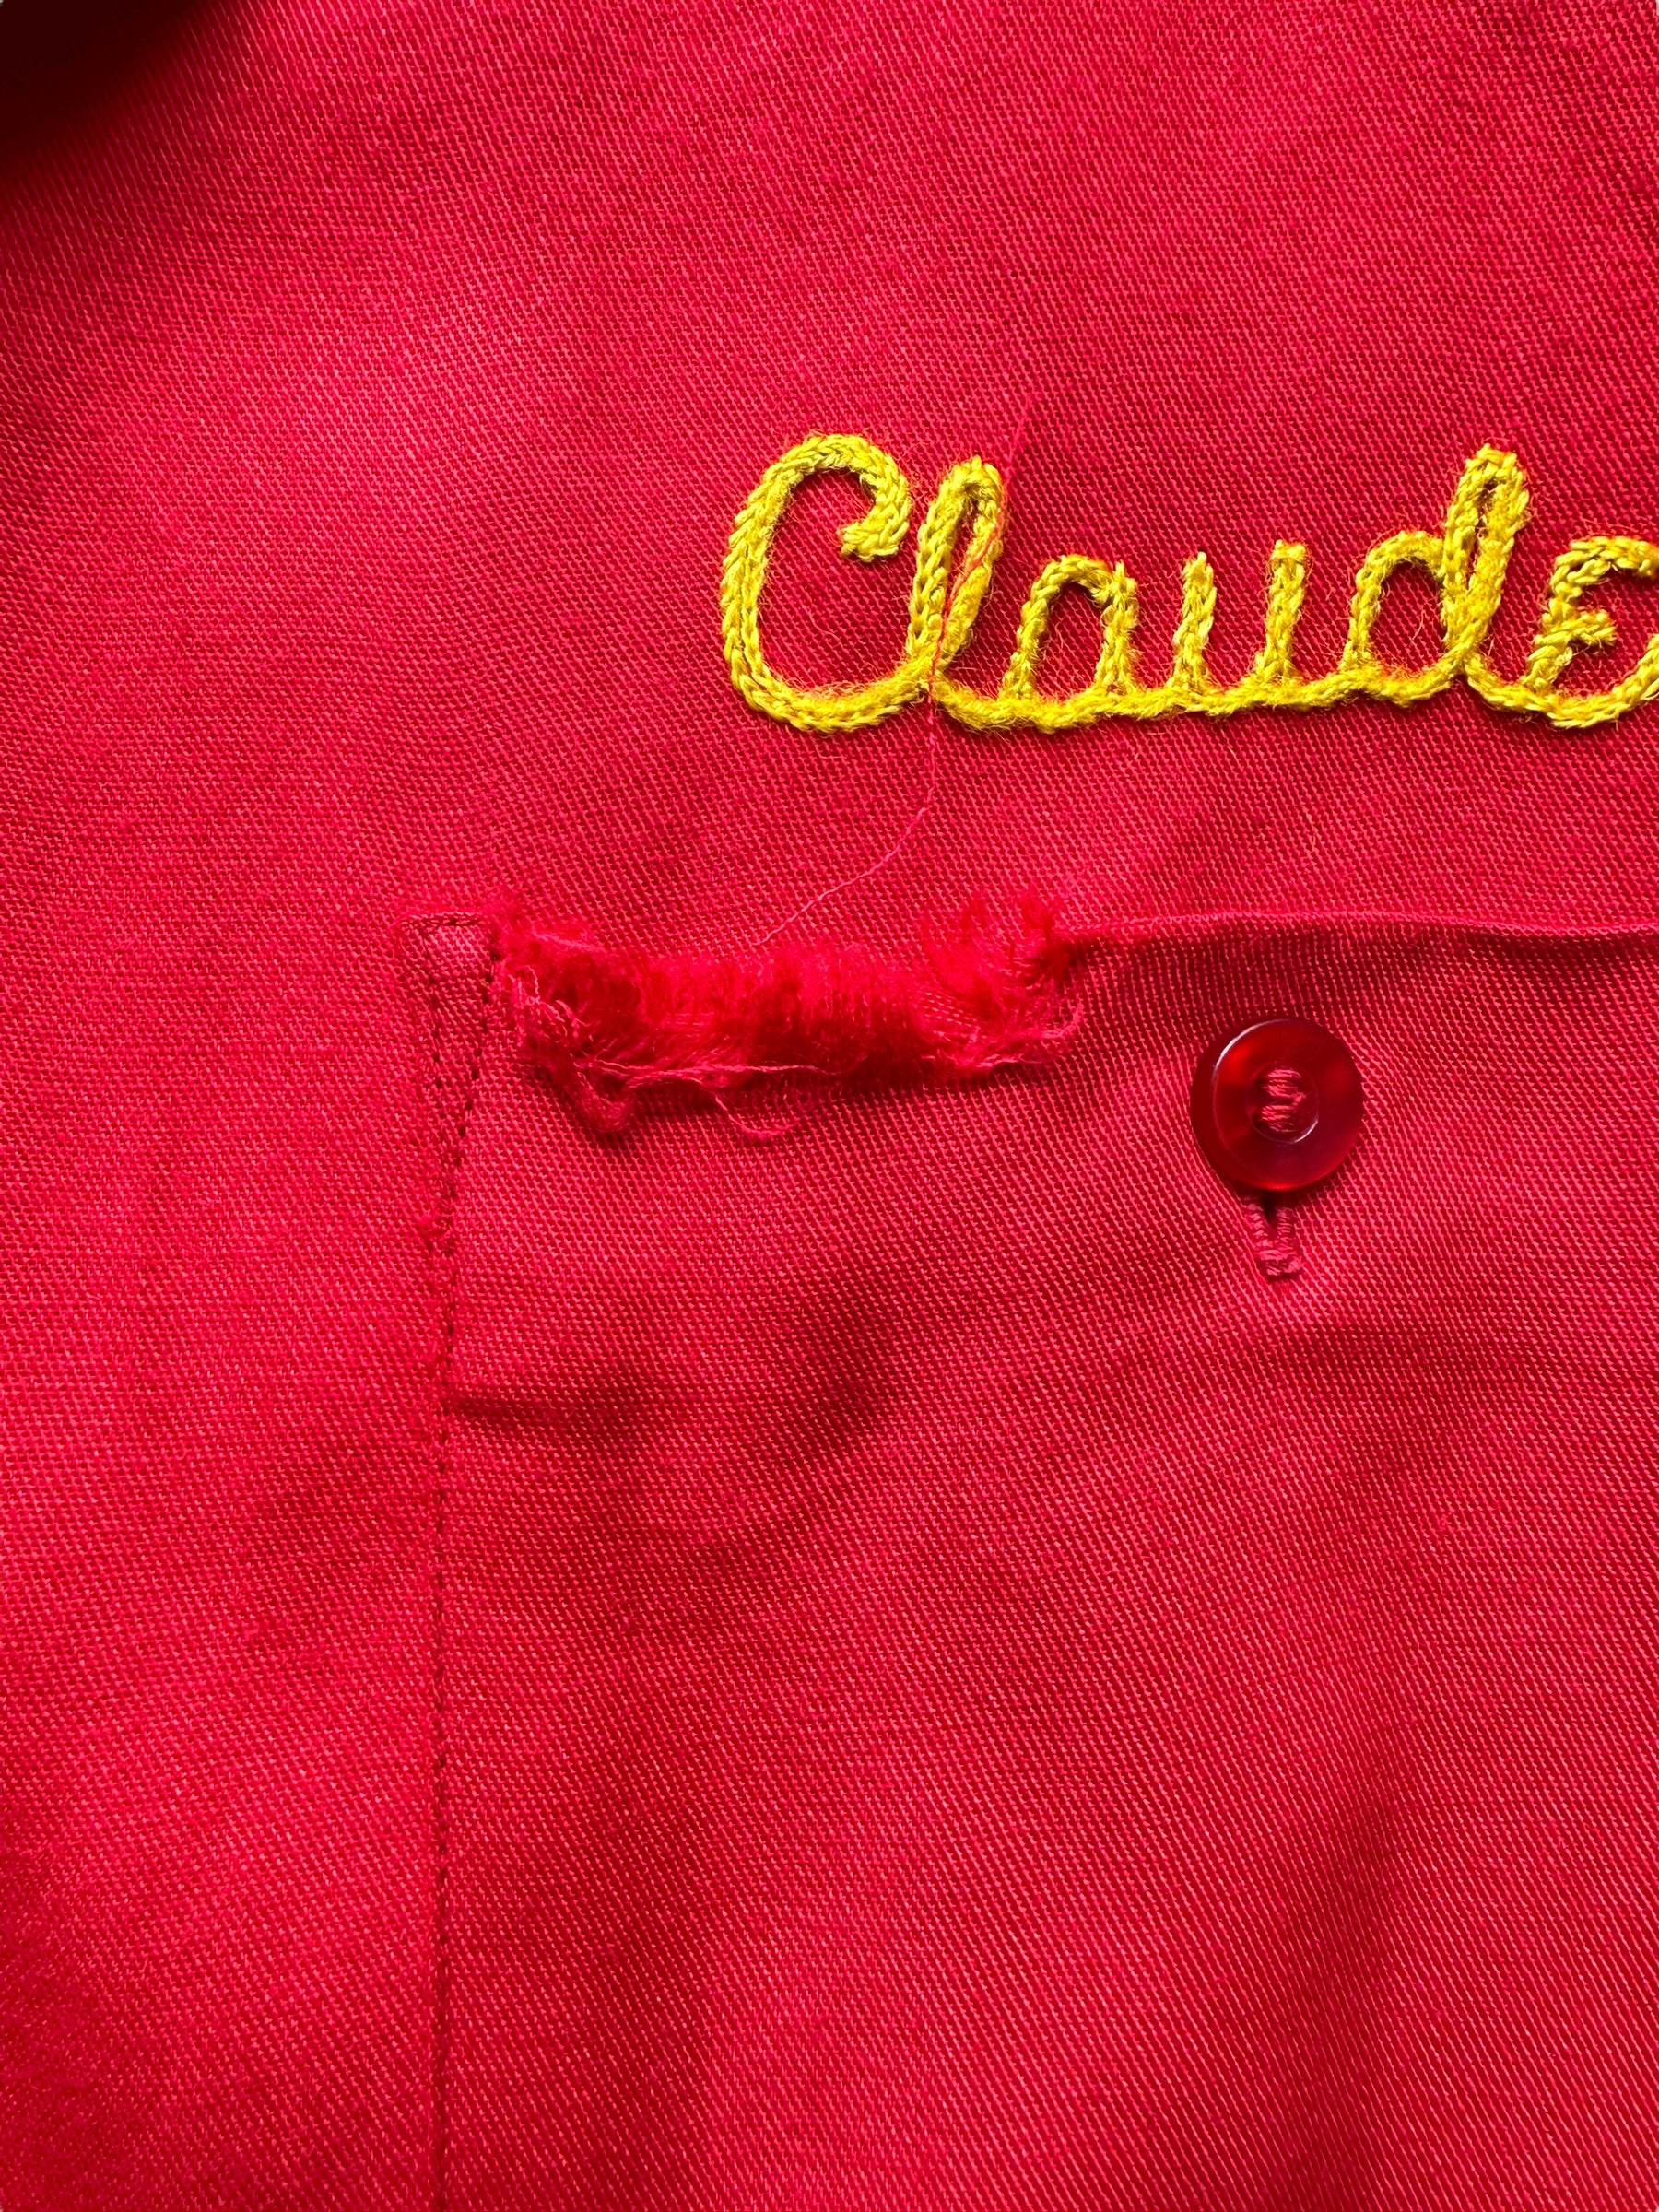 Pocket damage on Vintage "Shearer's Service Station" Chainstitched Bowling Shirt SZ M | Vintage Bowling Shirt Seattle | Barn Owl Vintage Seattle